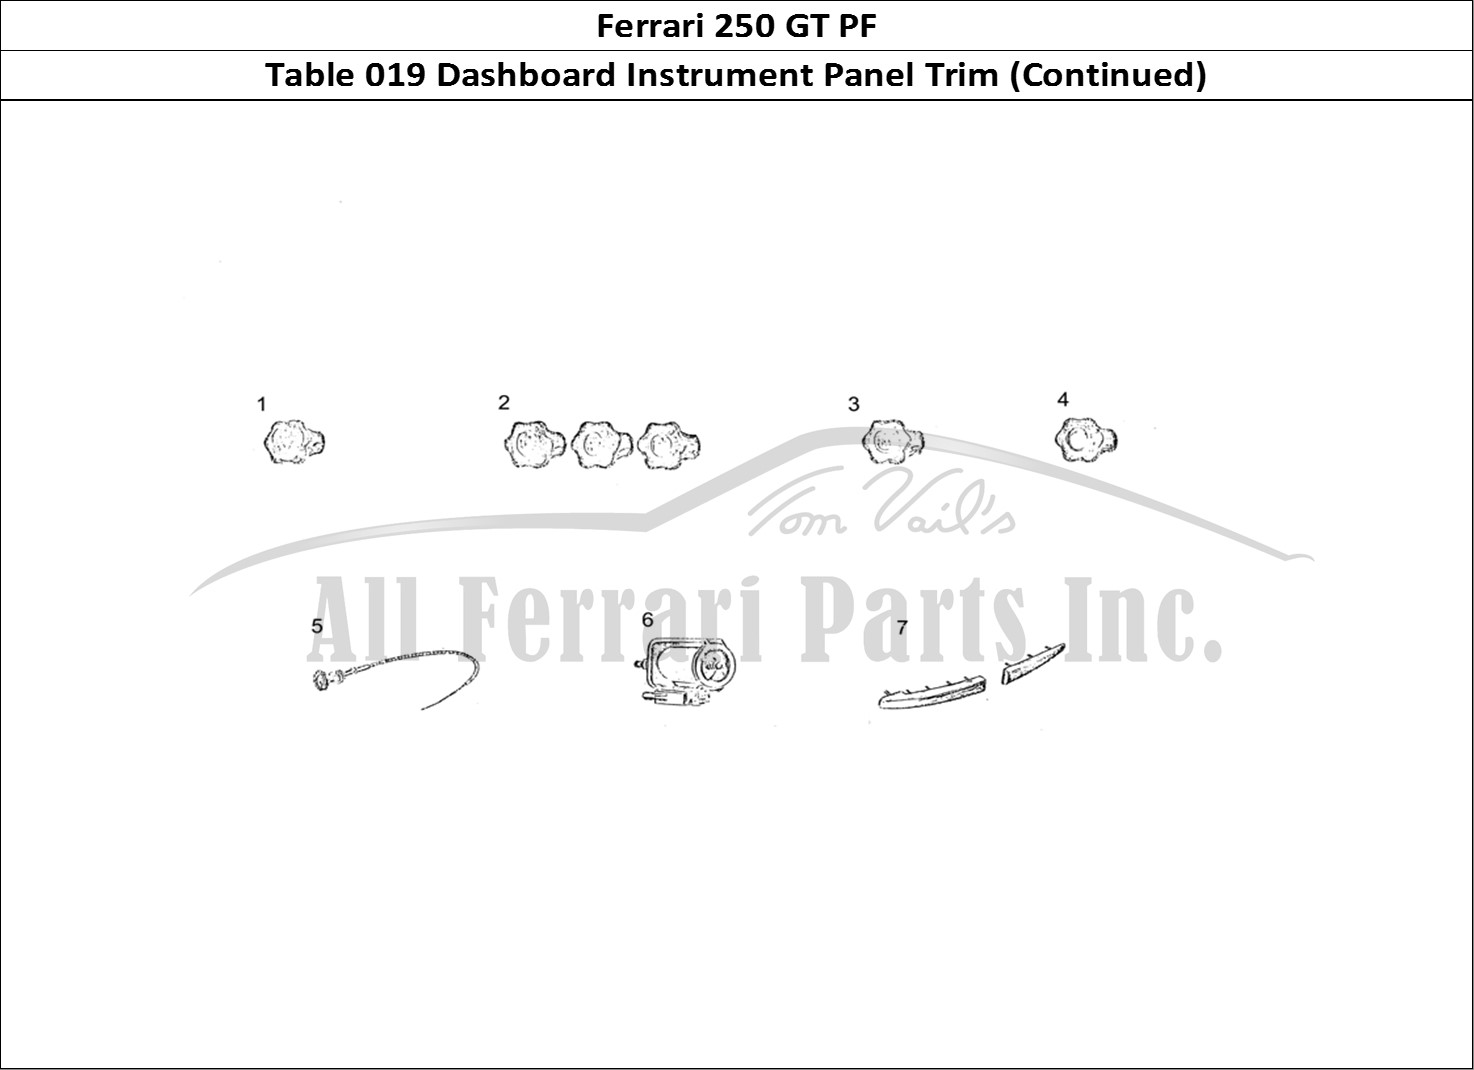 Ferrari Parts Ferrari 250 GT (Coachwork) Page 019 Dashboard Trim (continued